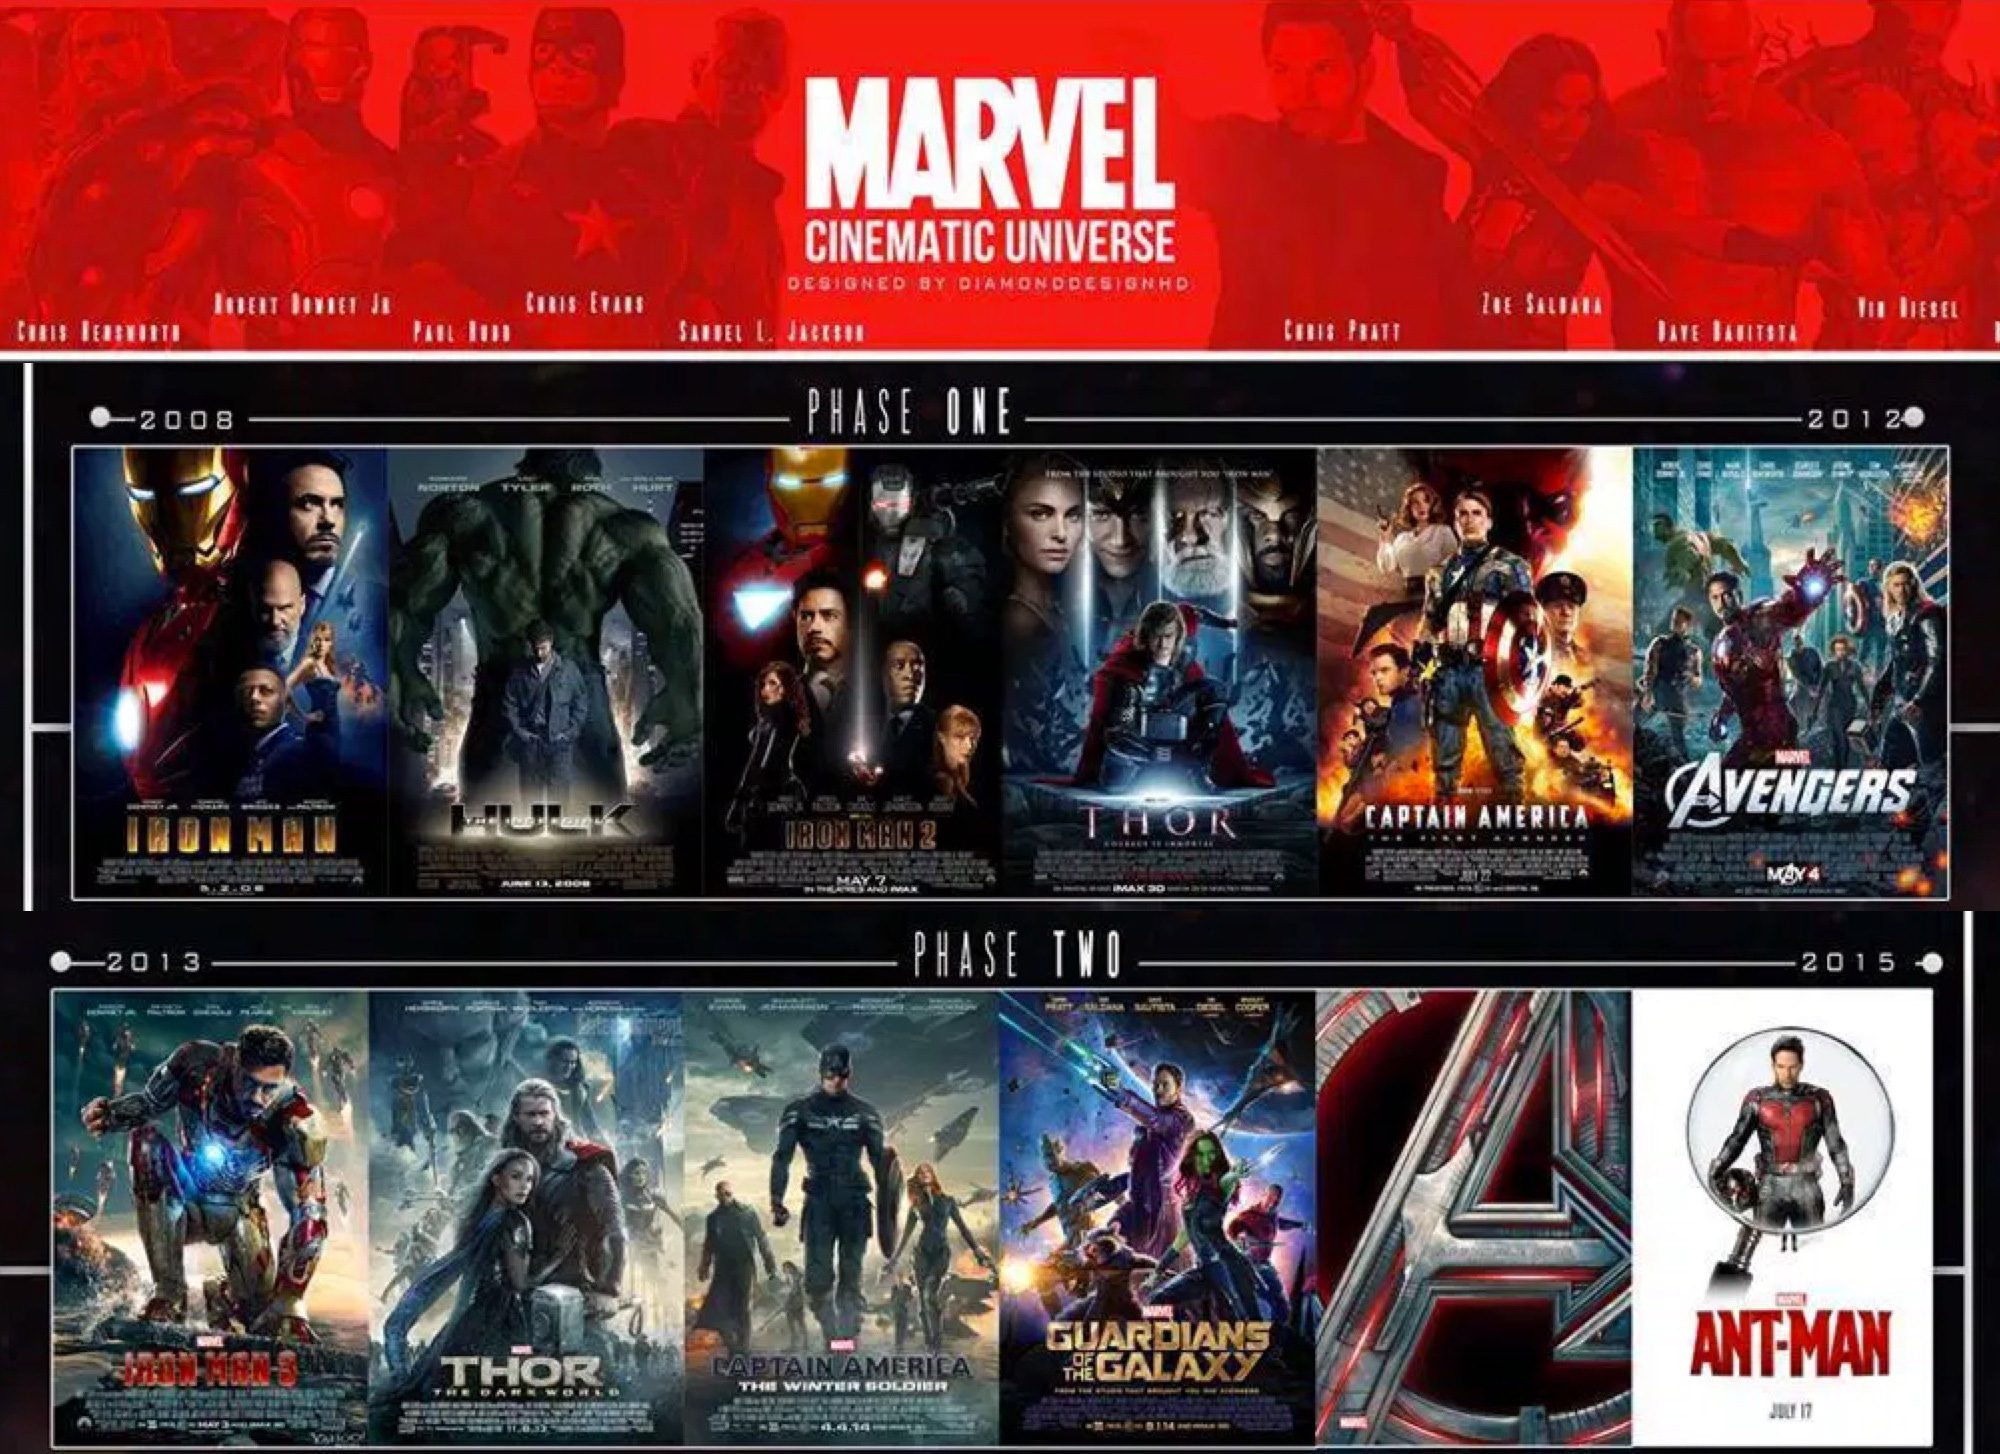 Đạo diễn của Avengers: Infinity thay đổi ảnh bìa facebook bằng poster của  Hawkeye, điều này có nghĩa gì?